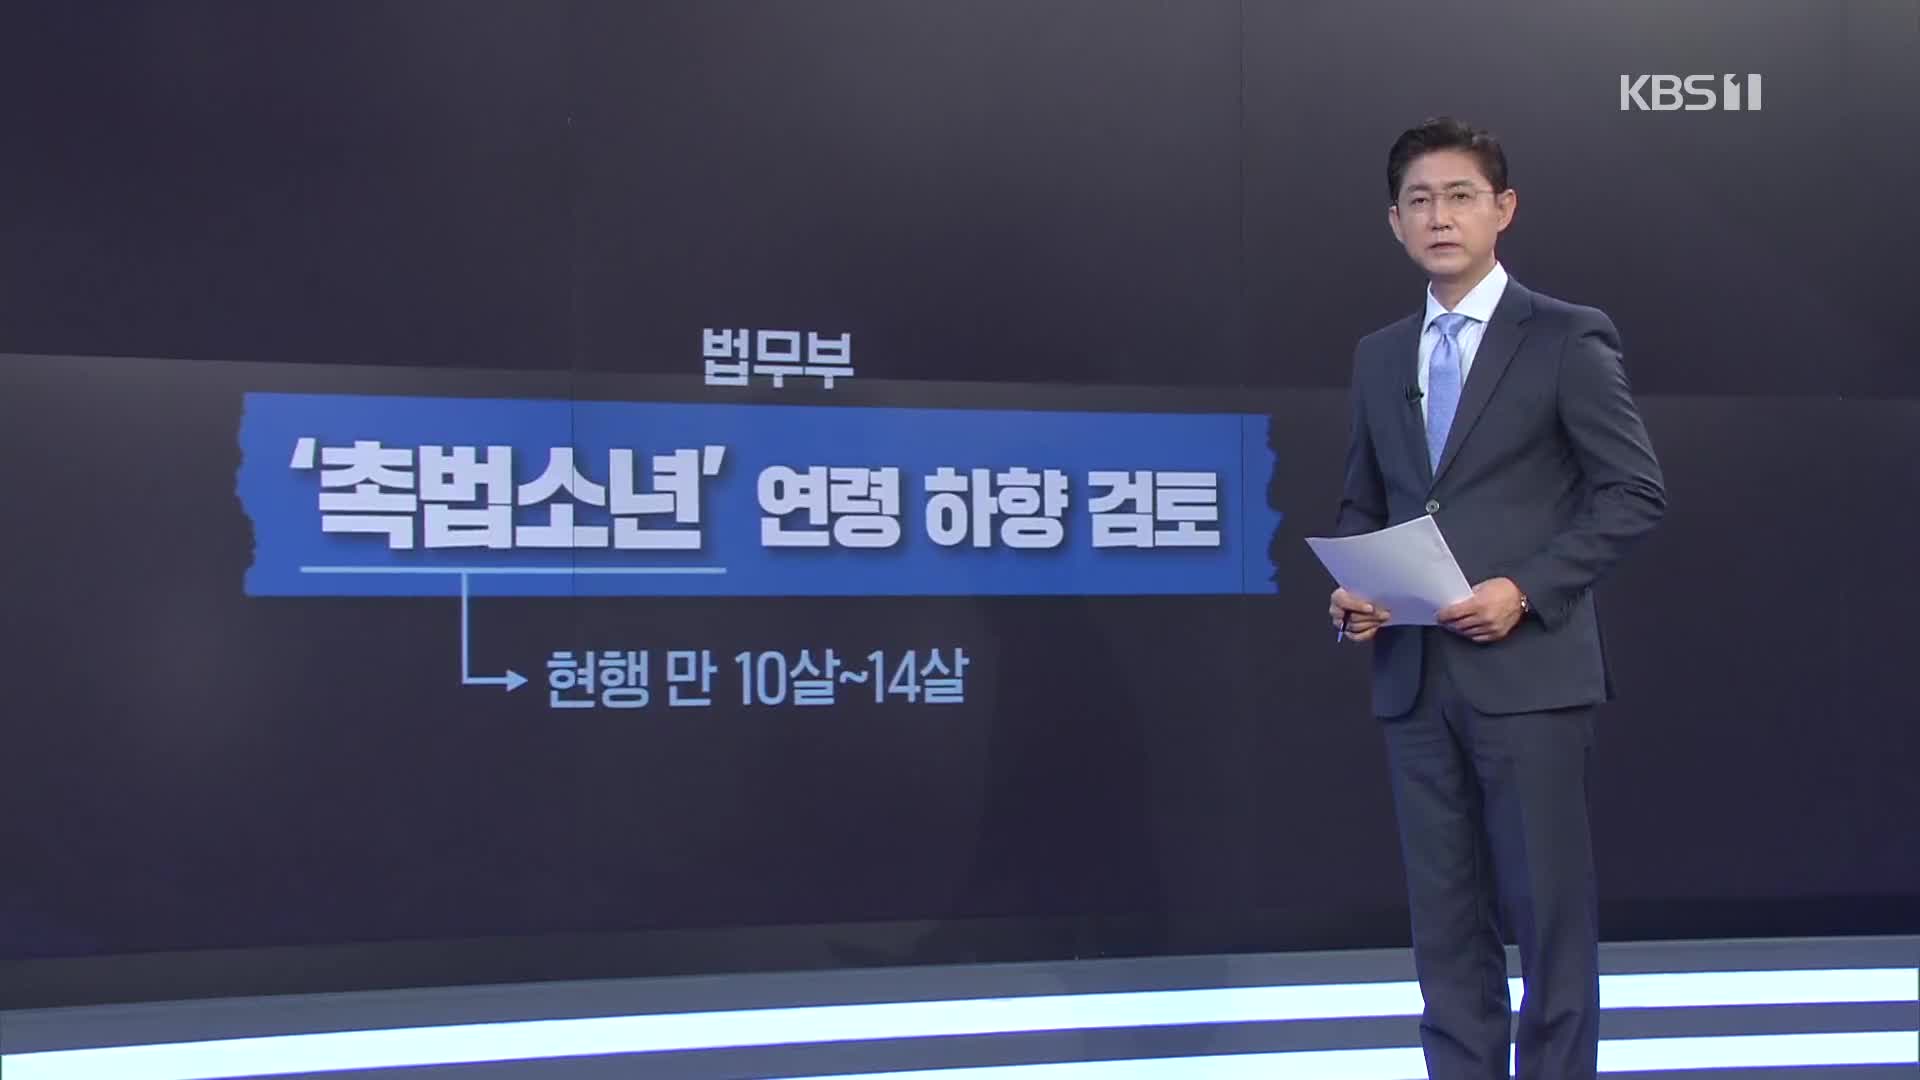 ‘촉법소년’ 연령 하향 논의 본격화